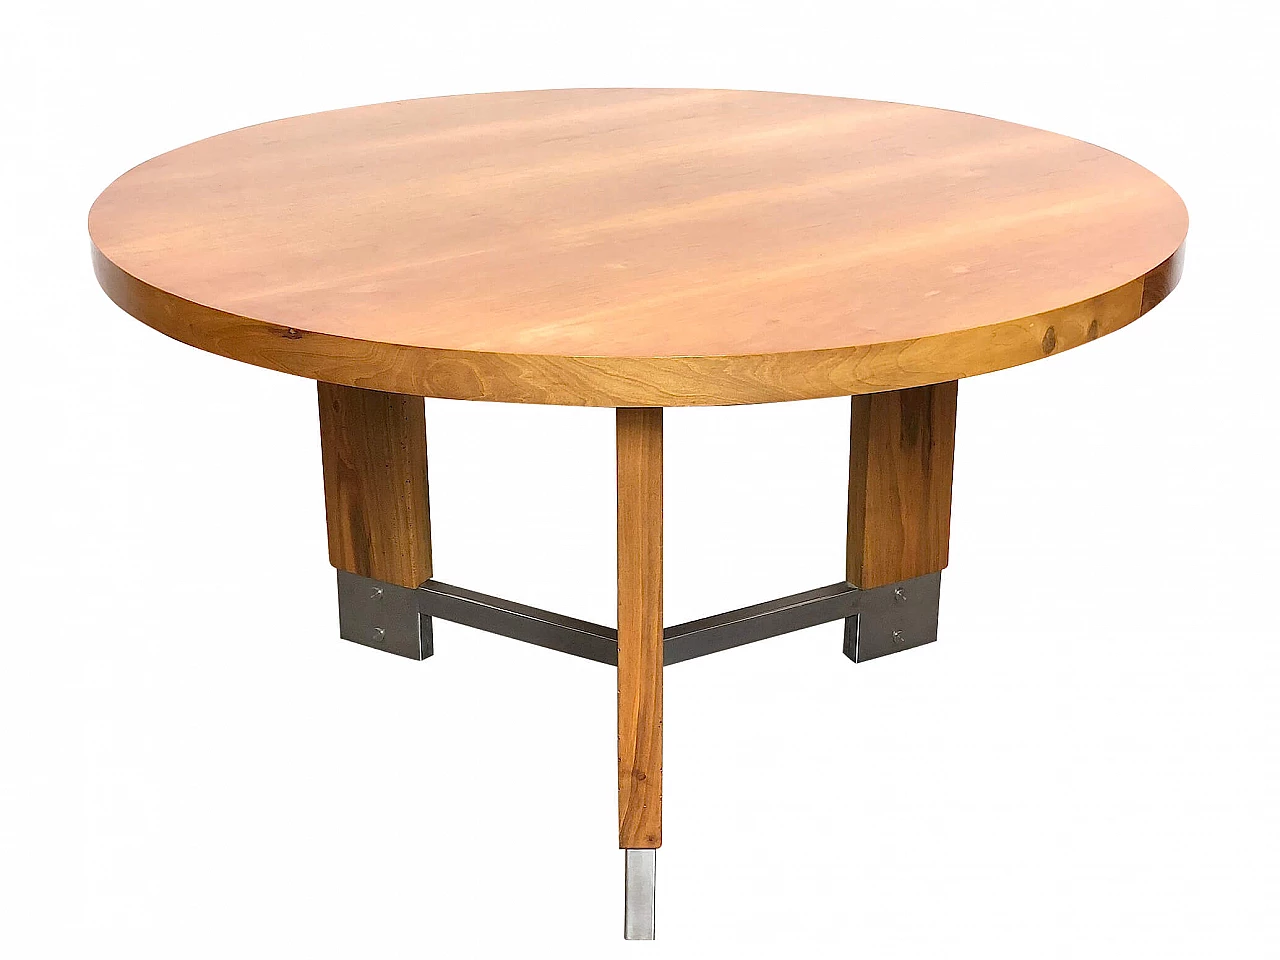 Beechwood and steel table, 1960s 1307465